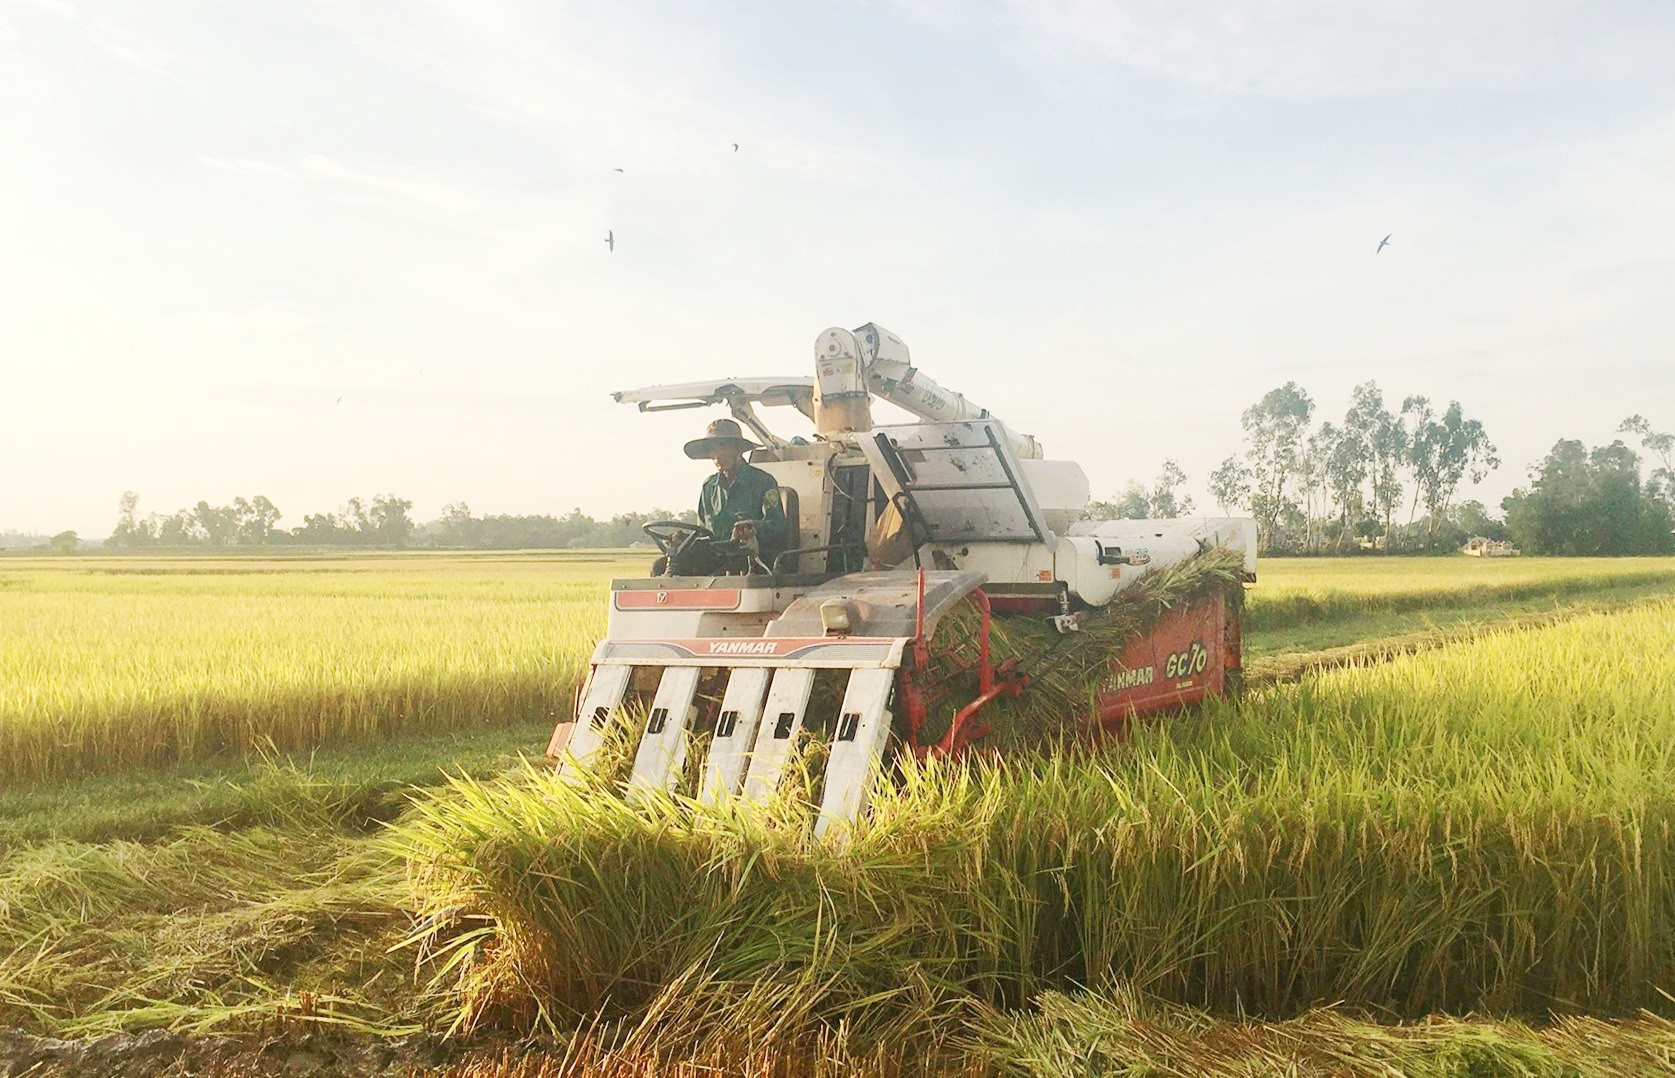 Những năm qua, Phú Ninh hình thành nhiều chuỗi liên kết sản xuất lúa giống hàng hóa nhằm giúp nông dân ổn định đầu ra sản phẩm và nâng cao giá trị kinh tế. Ảnh: C.L